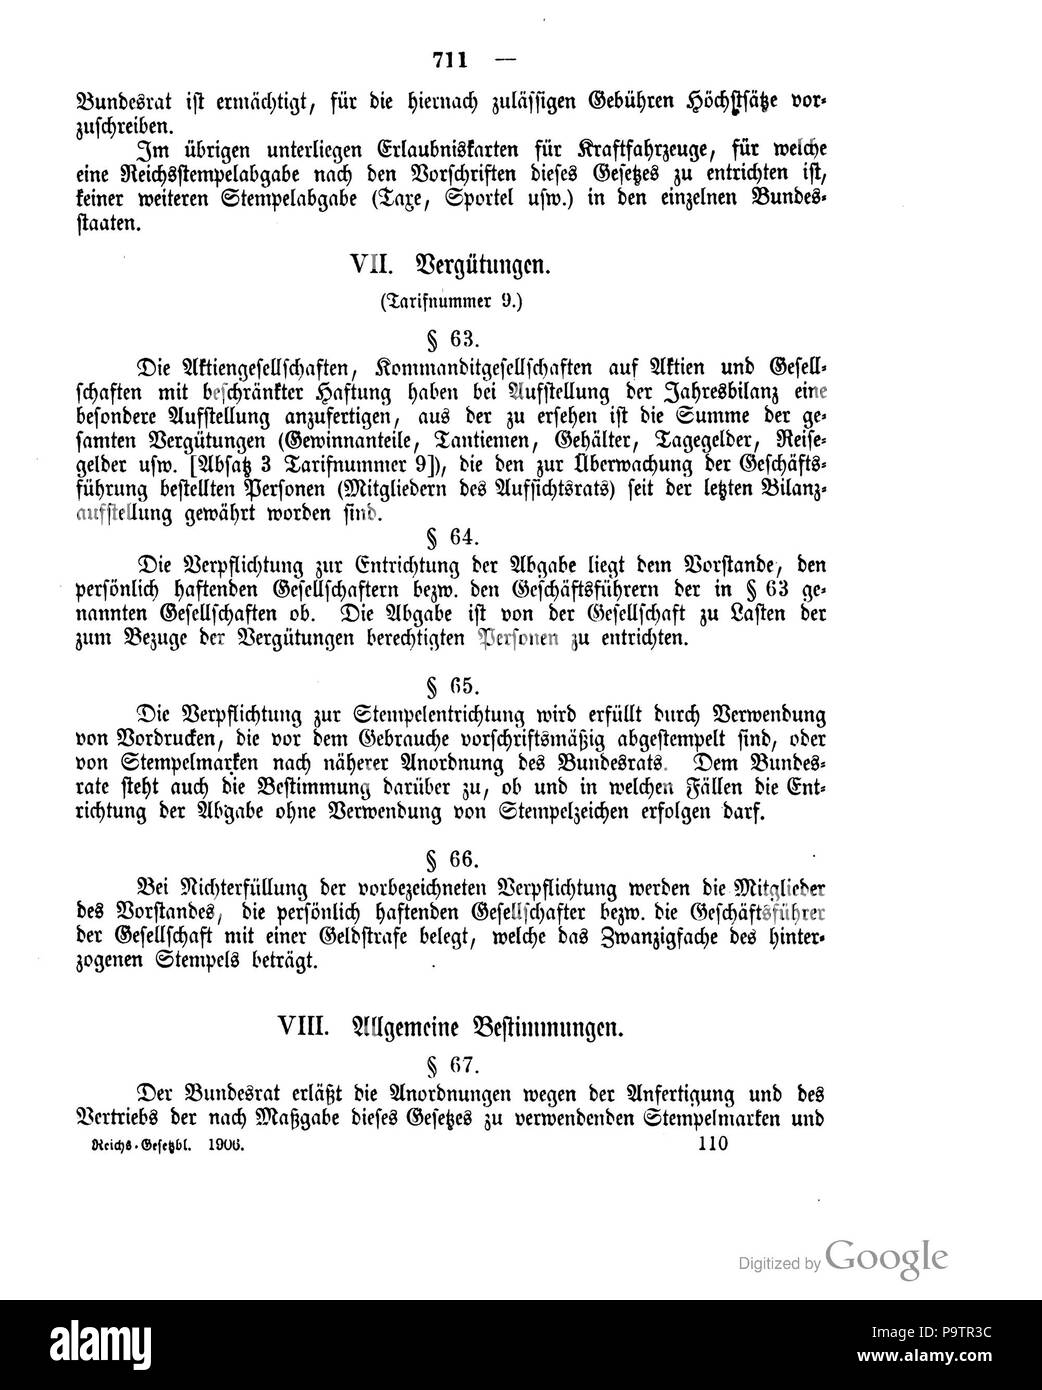 420 Deutsches Reichsgesetzblatt 1906 033 711 Stock Photo